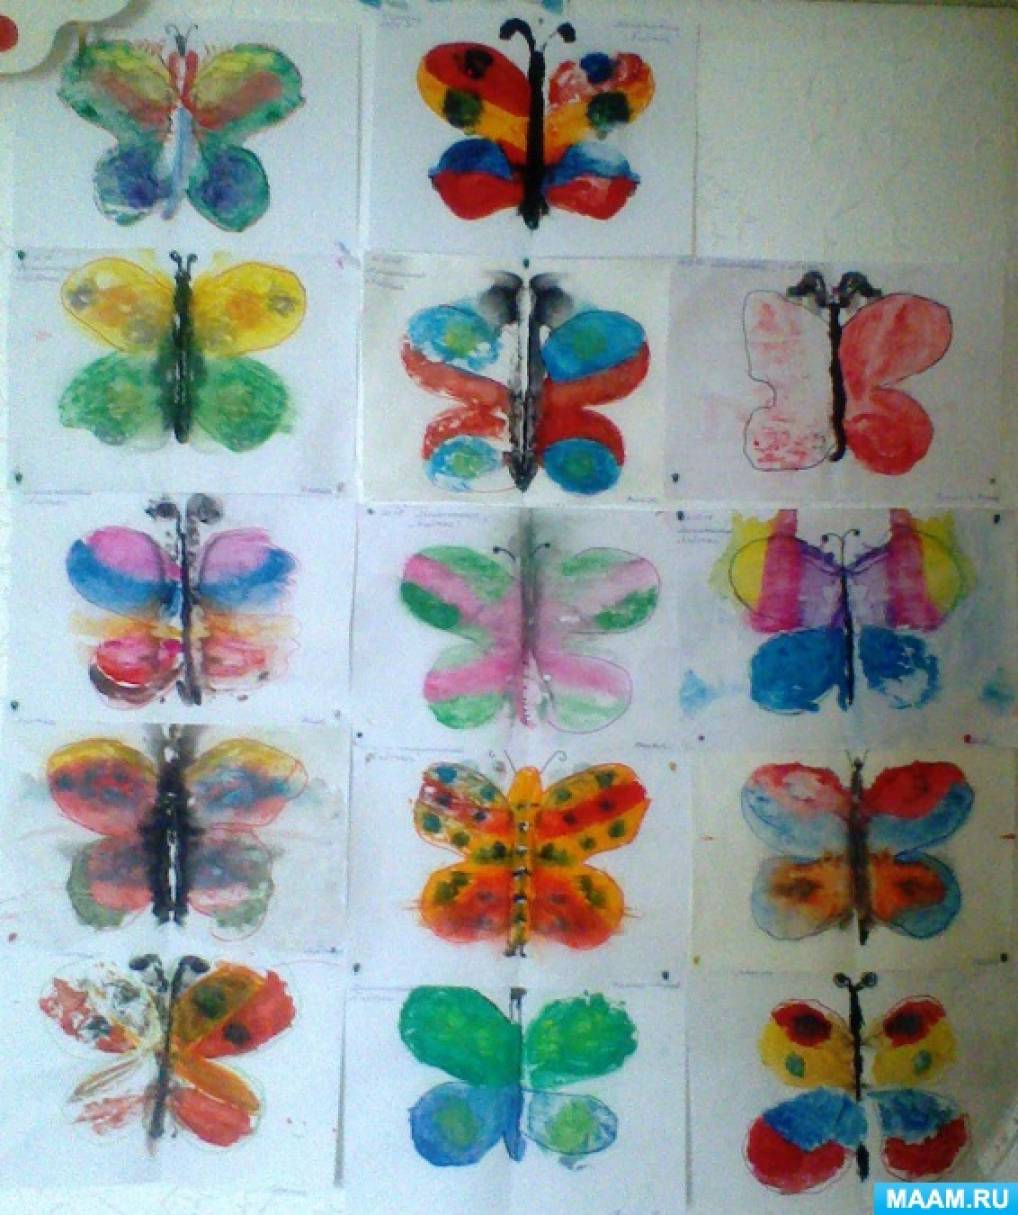 Старшая группа тема насекомые конспекты занятий. Рисование в младшей группе бабочка монотипия. Монотипия техника рисования бабочка. Рисование в средней группе. Рисование бабочка в средней группе.